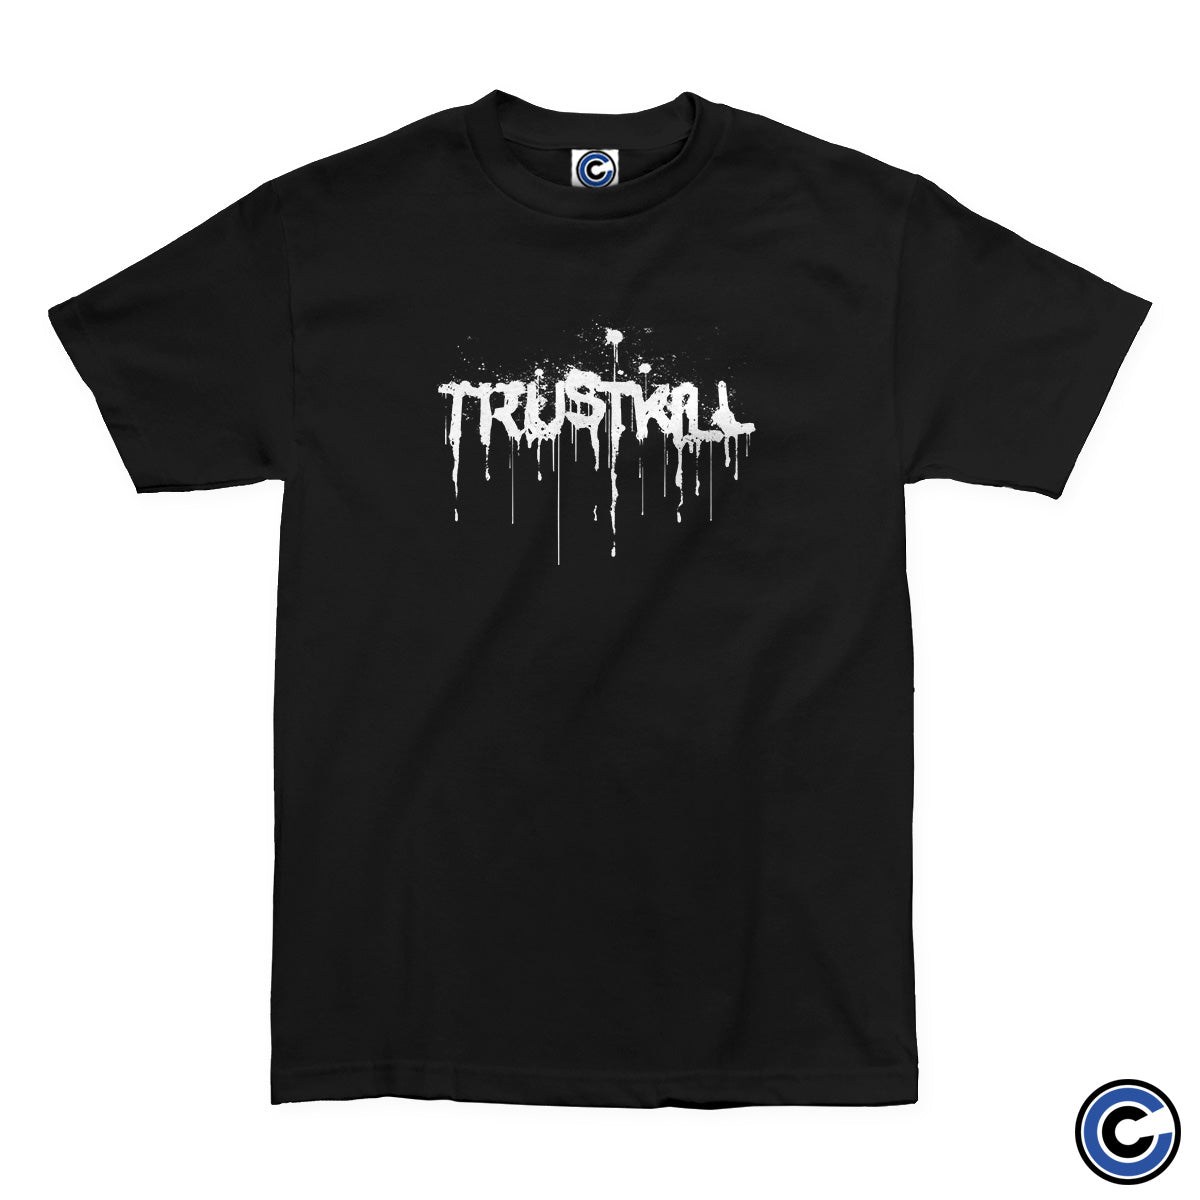 Trustkill Records "Spraypaint" Shirt